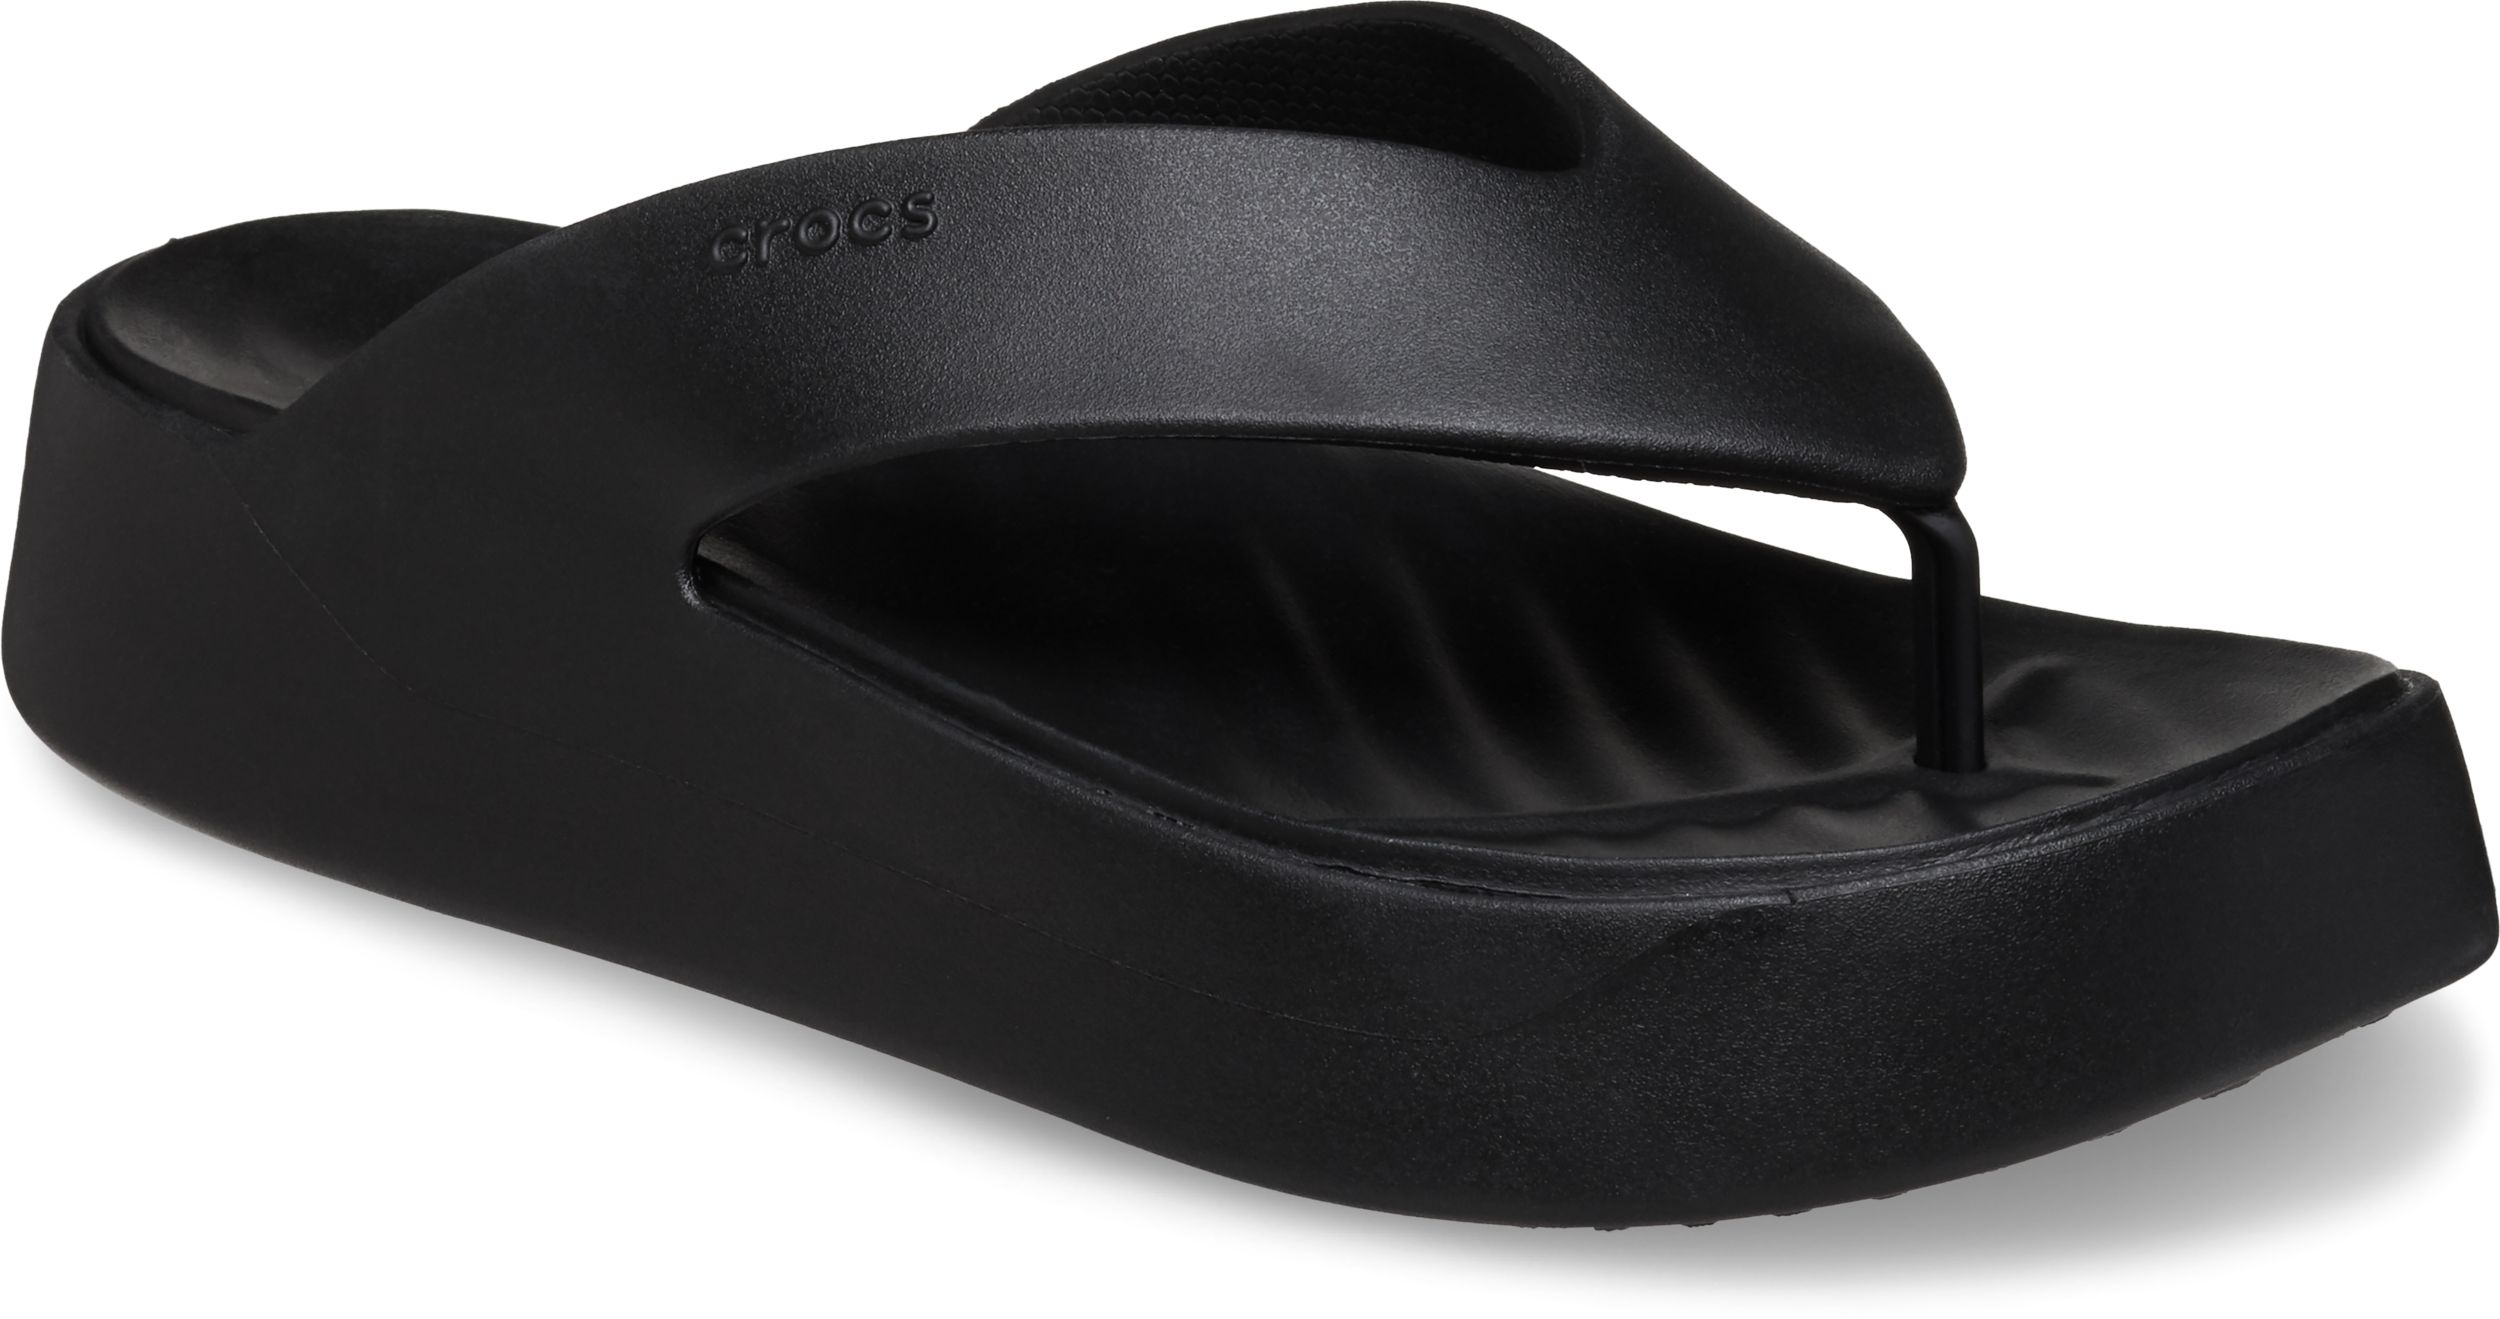 Image of Crocs Women's Getaway Platform Flip Flip Flop Sandals